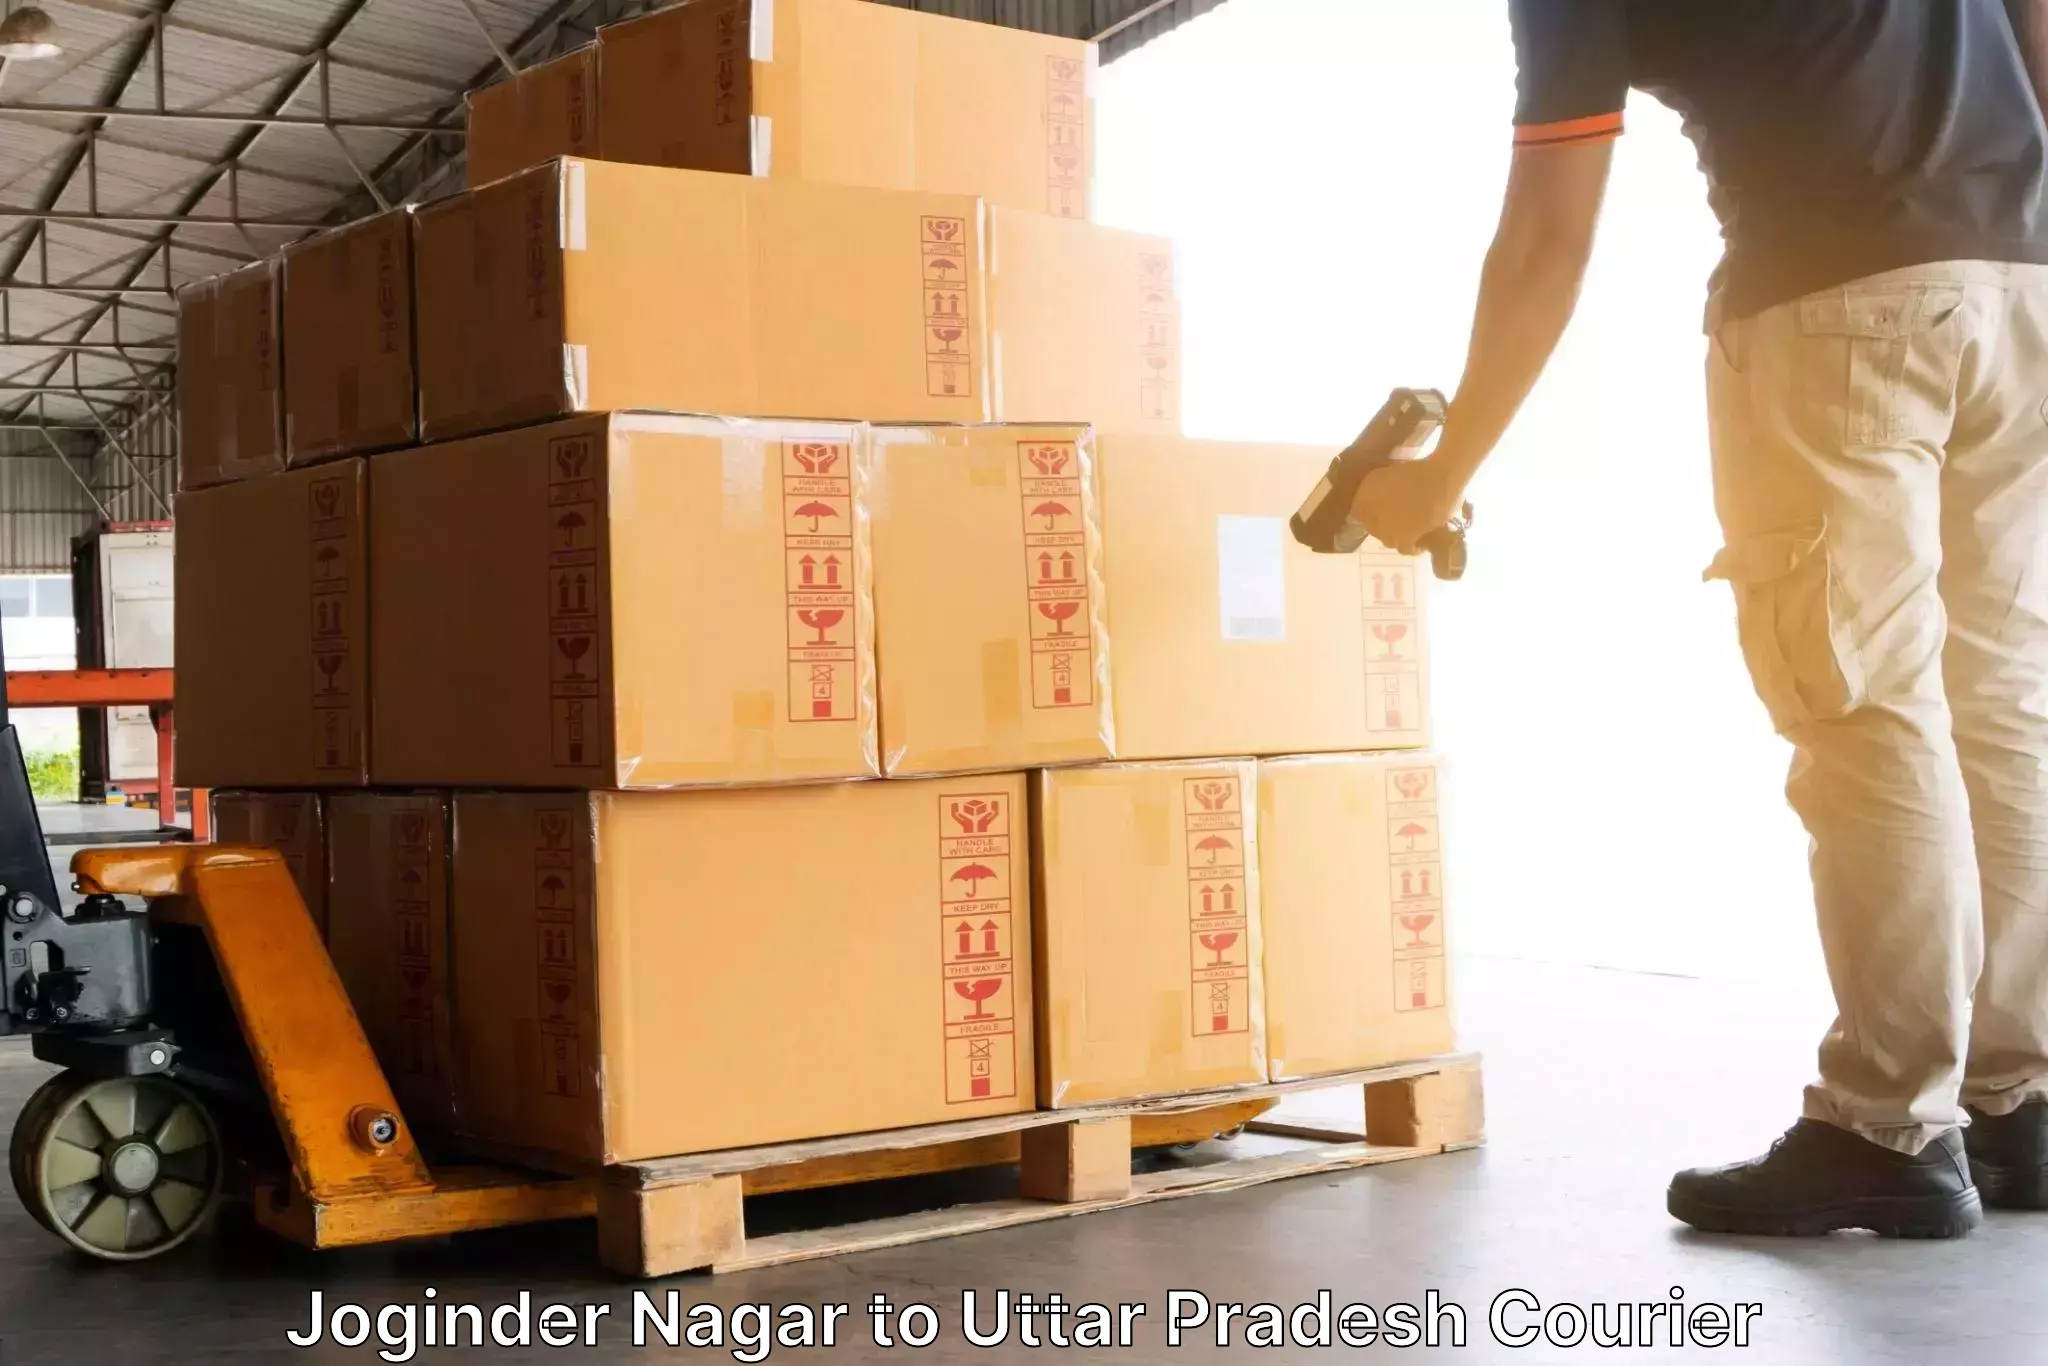 Efficient freight transportation Joginder Nagar to Uttar Pradesh